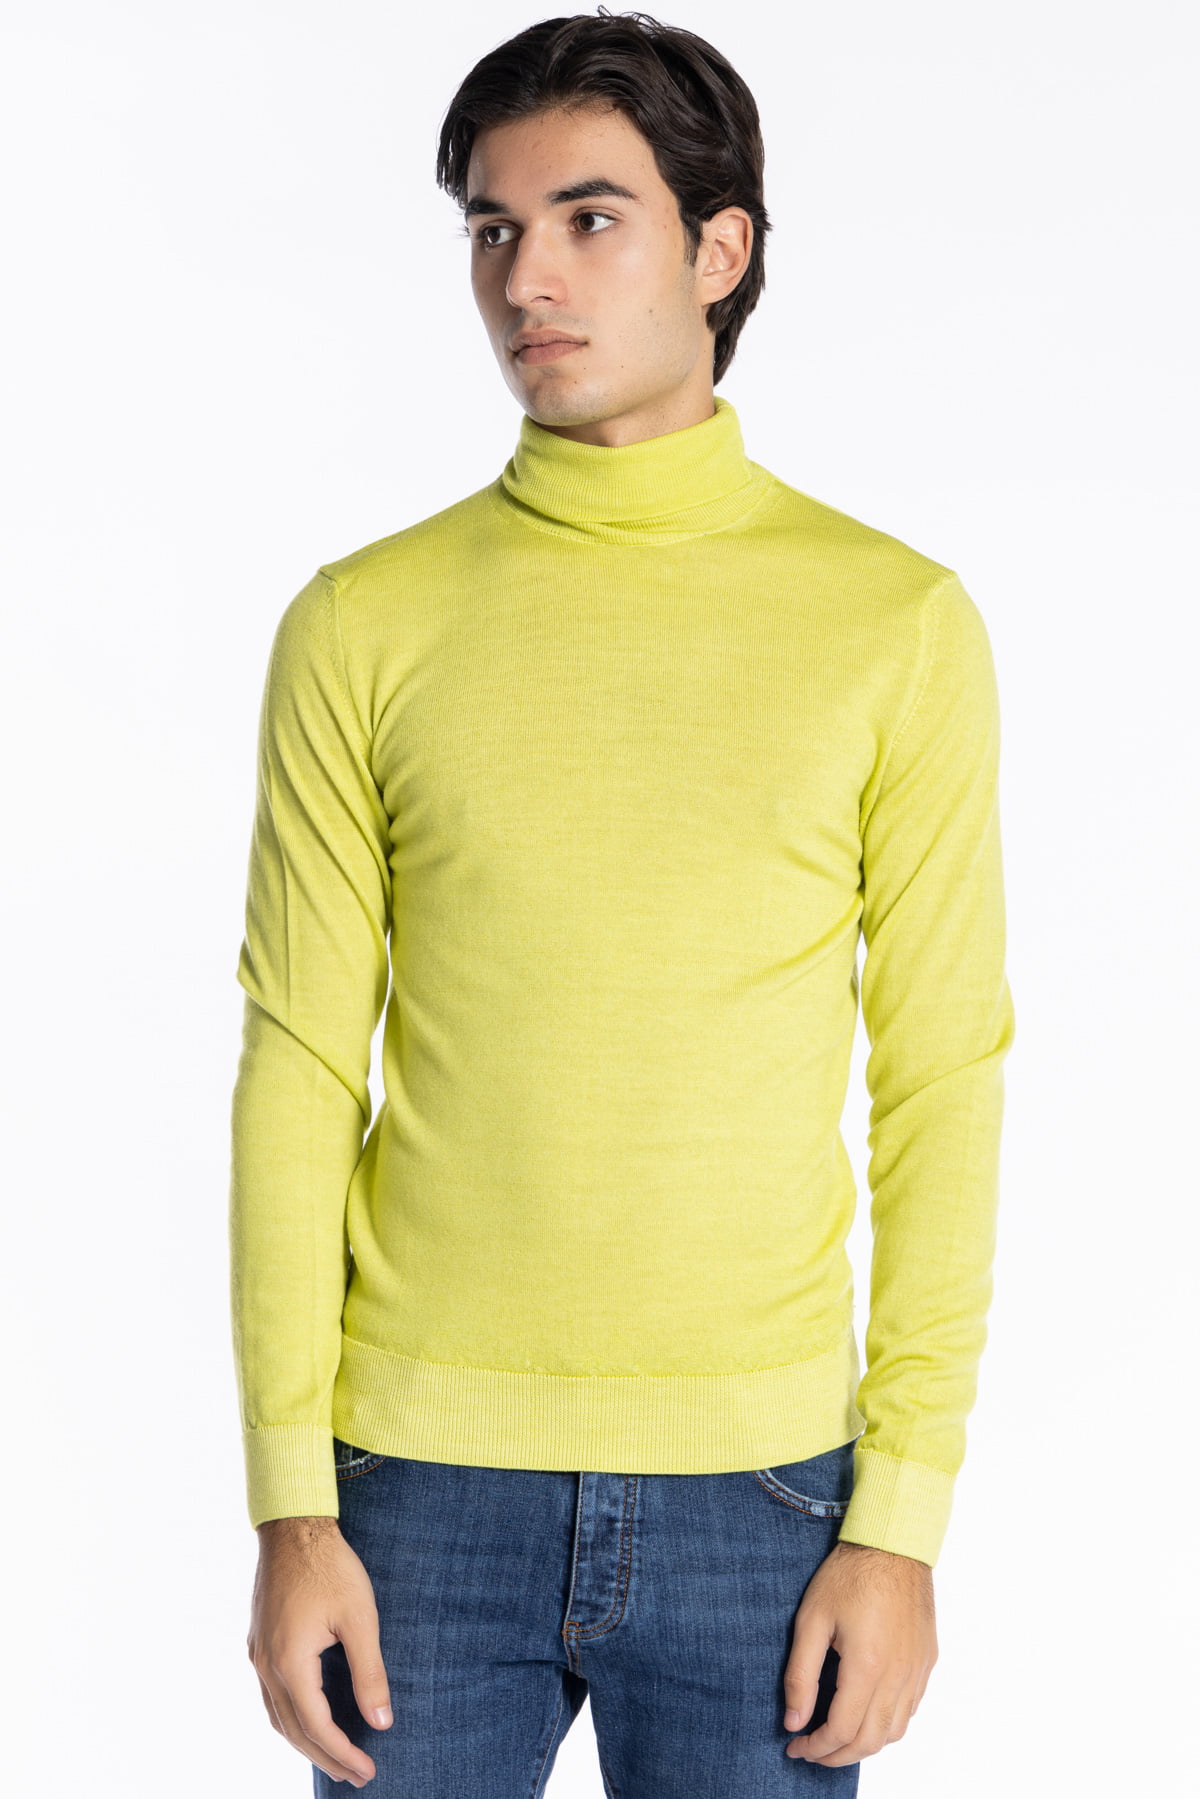 Maglione da uomo collo alto giallo lime lana merinos effetto stone wash maniche lunghe